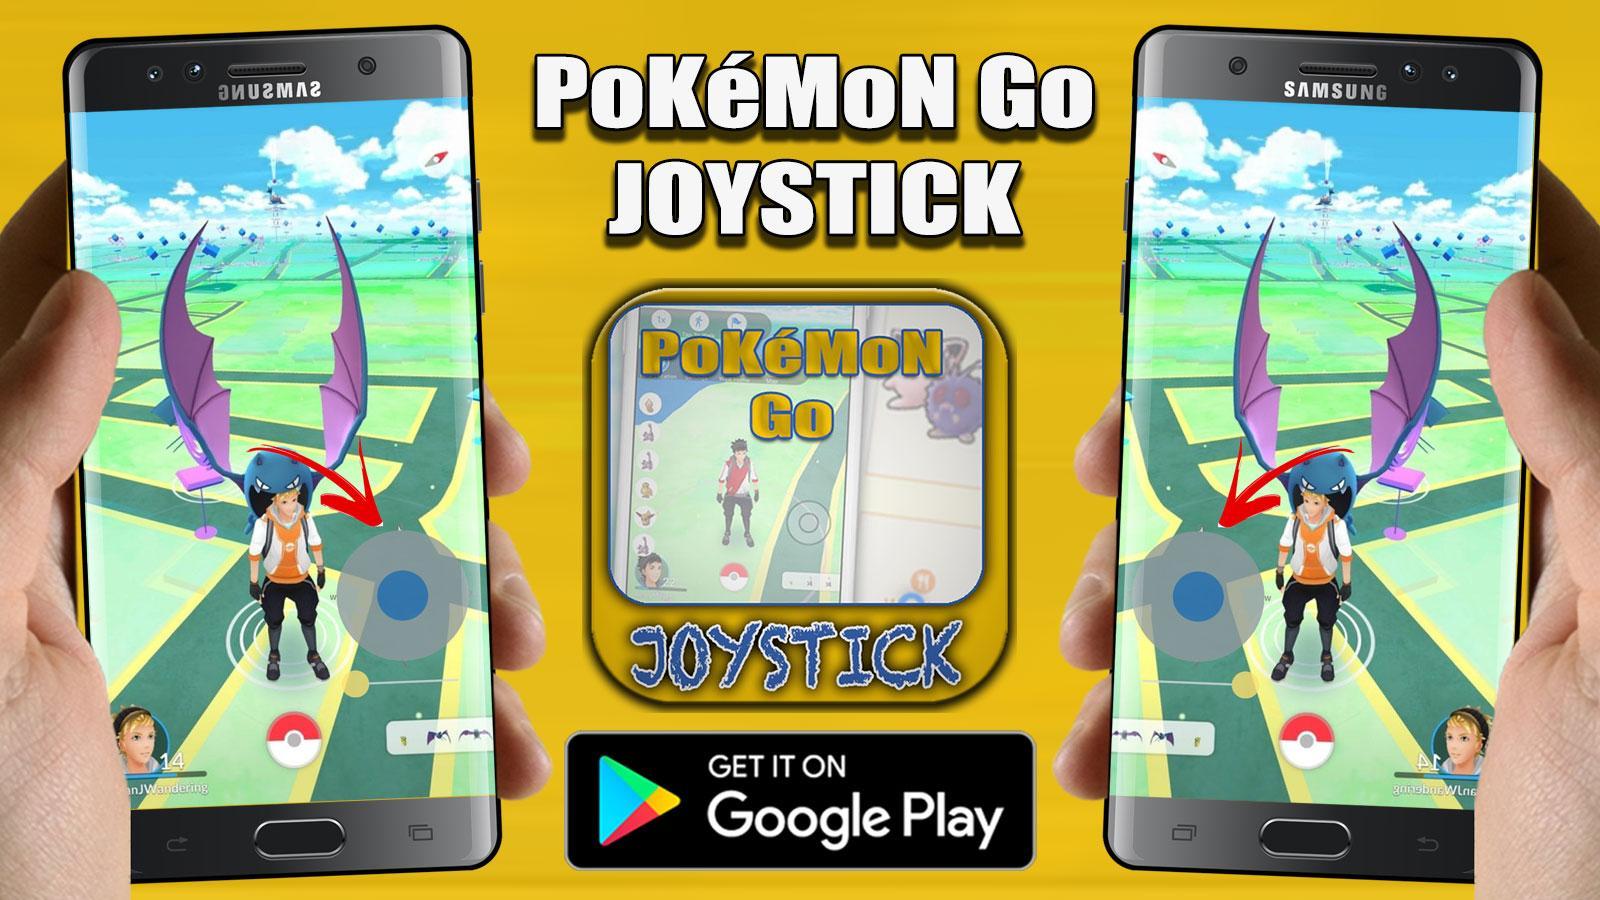 Get Joystick On Poke Go Fake GPS New Prank APK für Android herunterladen